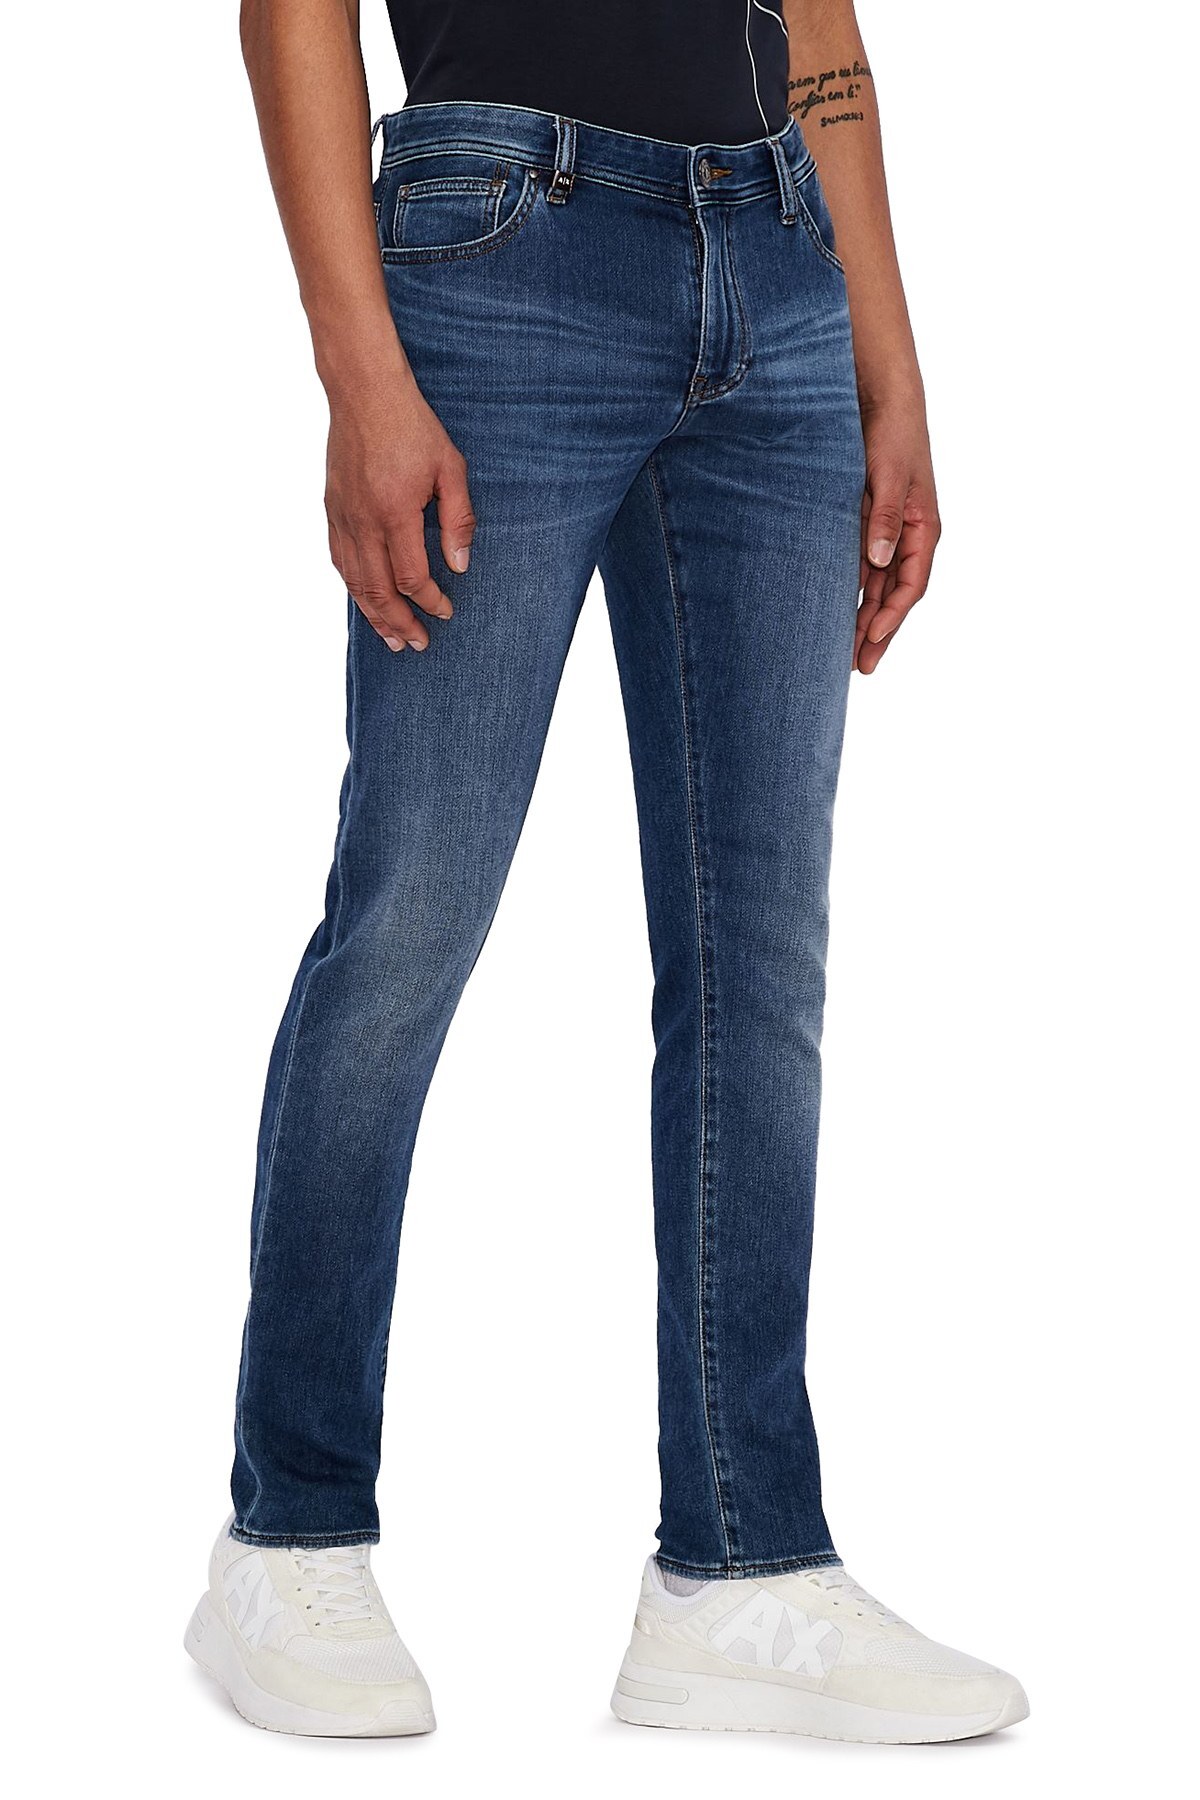 Armani Exchange J14 Jeans Erkek Kot Pantolon 3KZJ14 Z1FNZ 1500 MAVİ